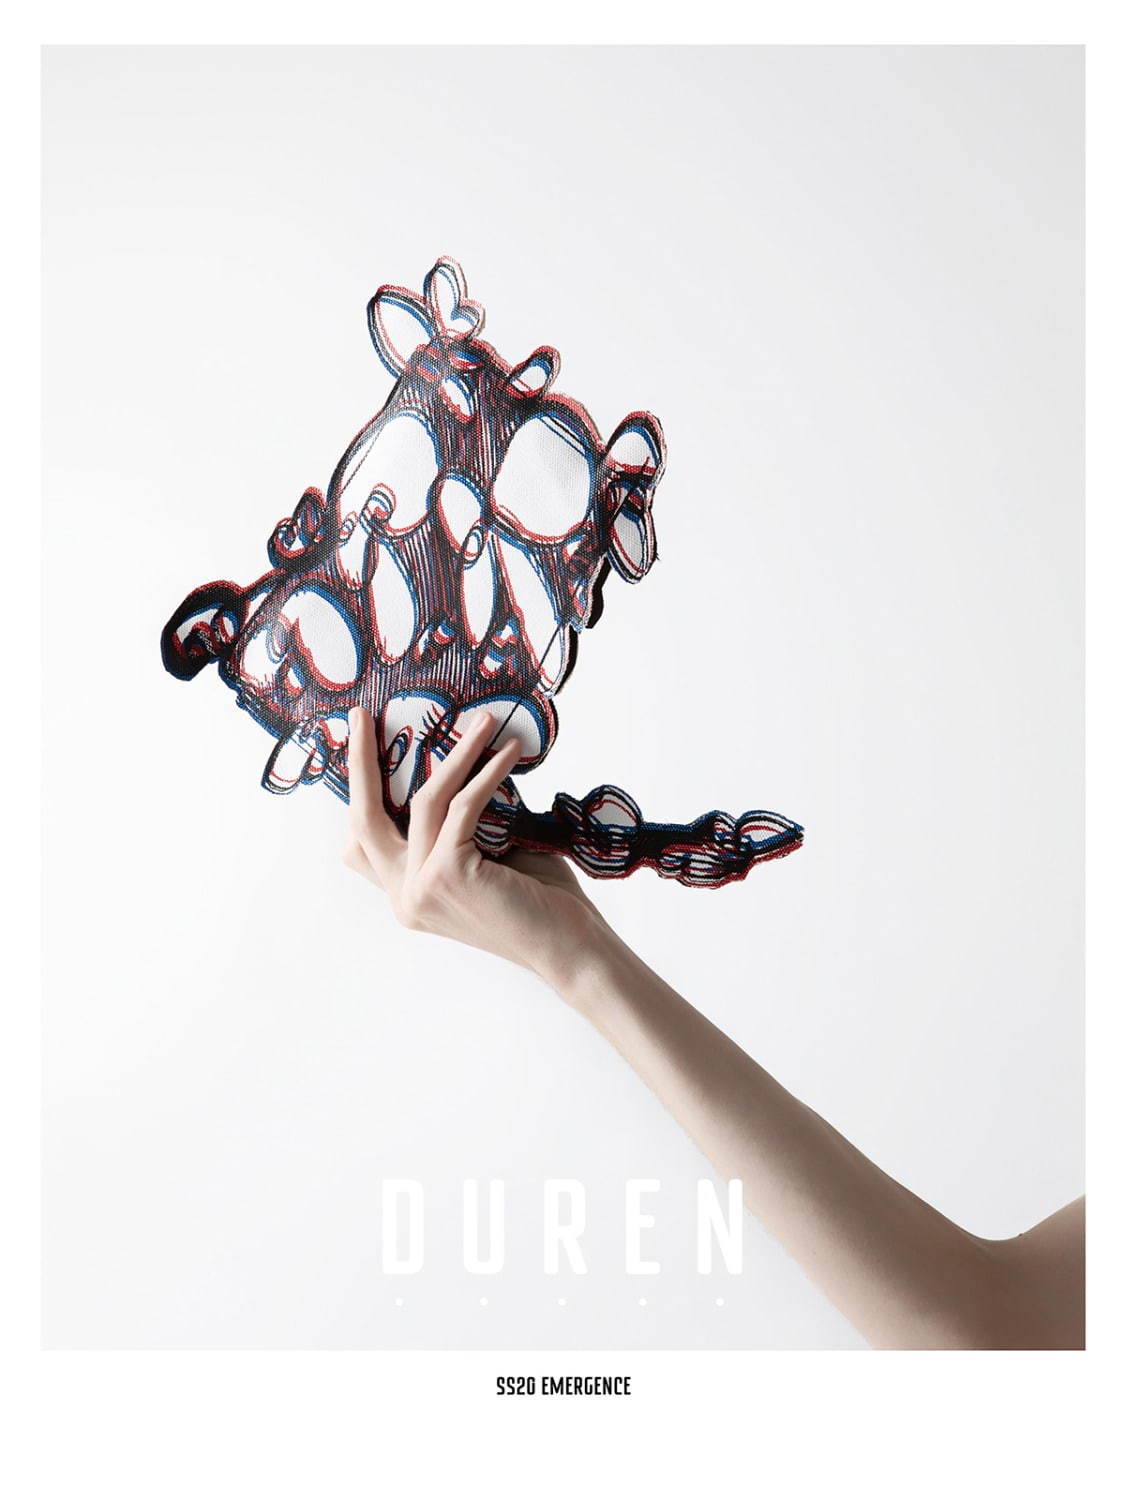 デューレン(DUREN) 2020年春夏メンズコレクション  - 写真6